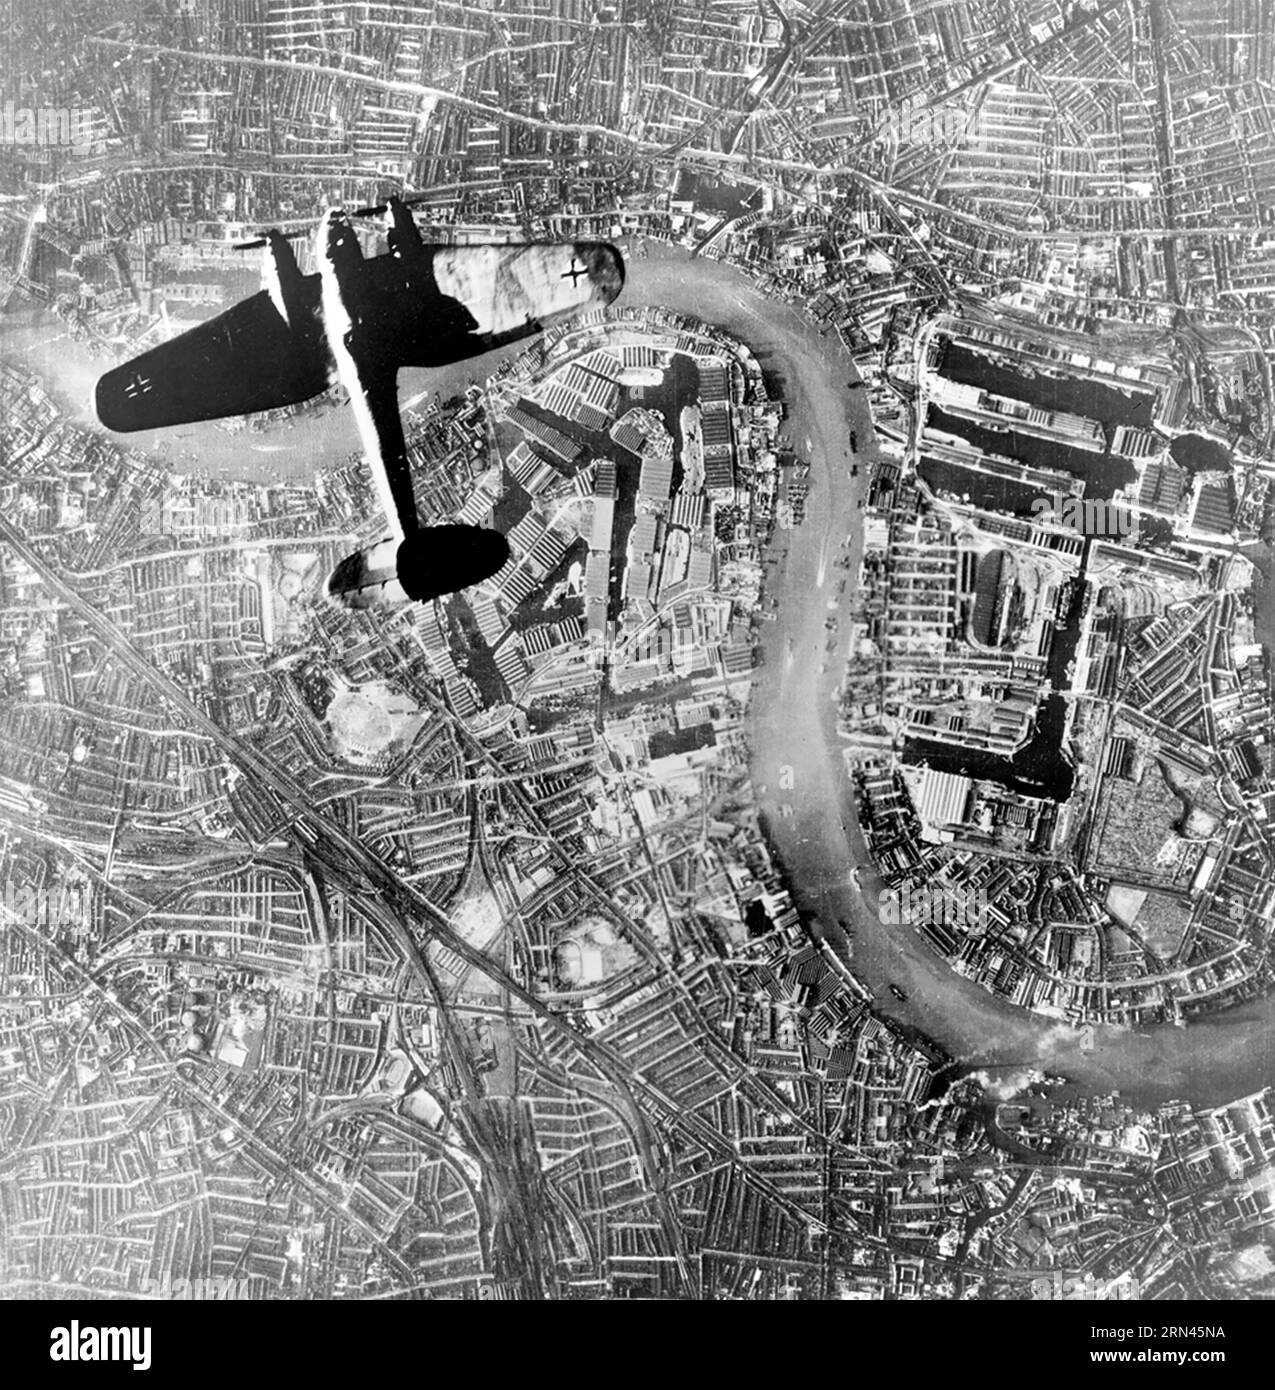 BATAILLE D'ANGLETERRE Un bombardier allemand Heinkel II dans un rair de jour au-dessus de Rotherhithe et de la région des Docks de Londres le 7 septembre 1940 Banque D'Images